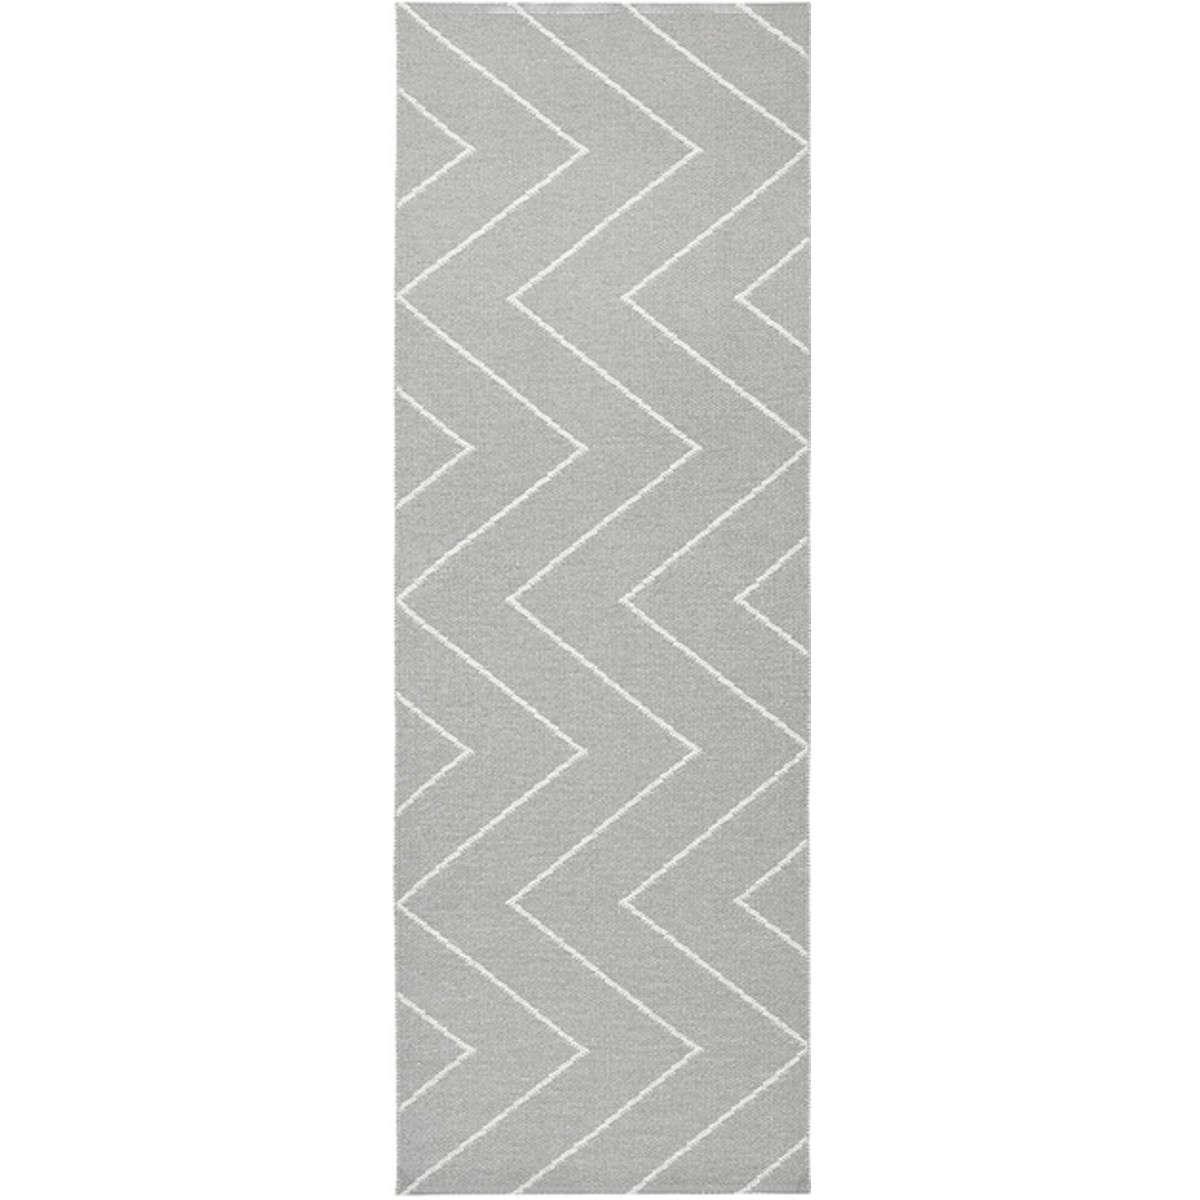 70x300cm - gris béton - Rita - tapis plastique - OFFER